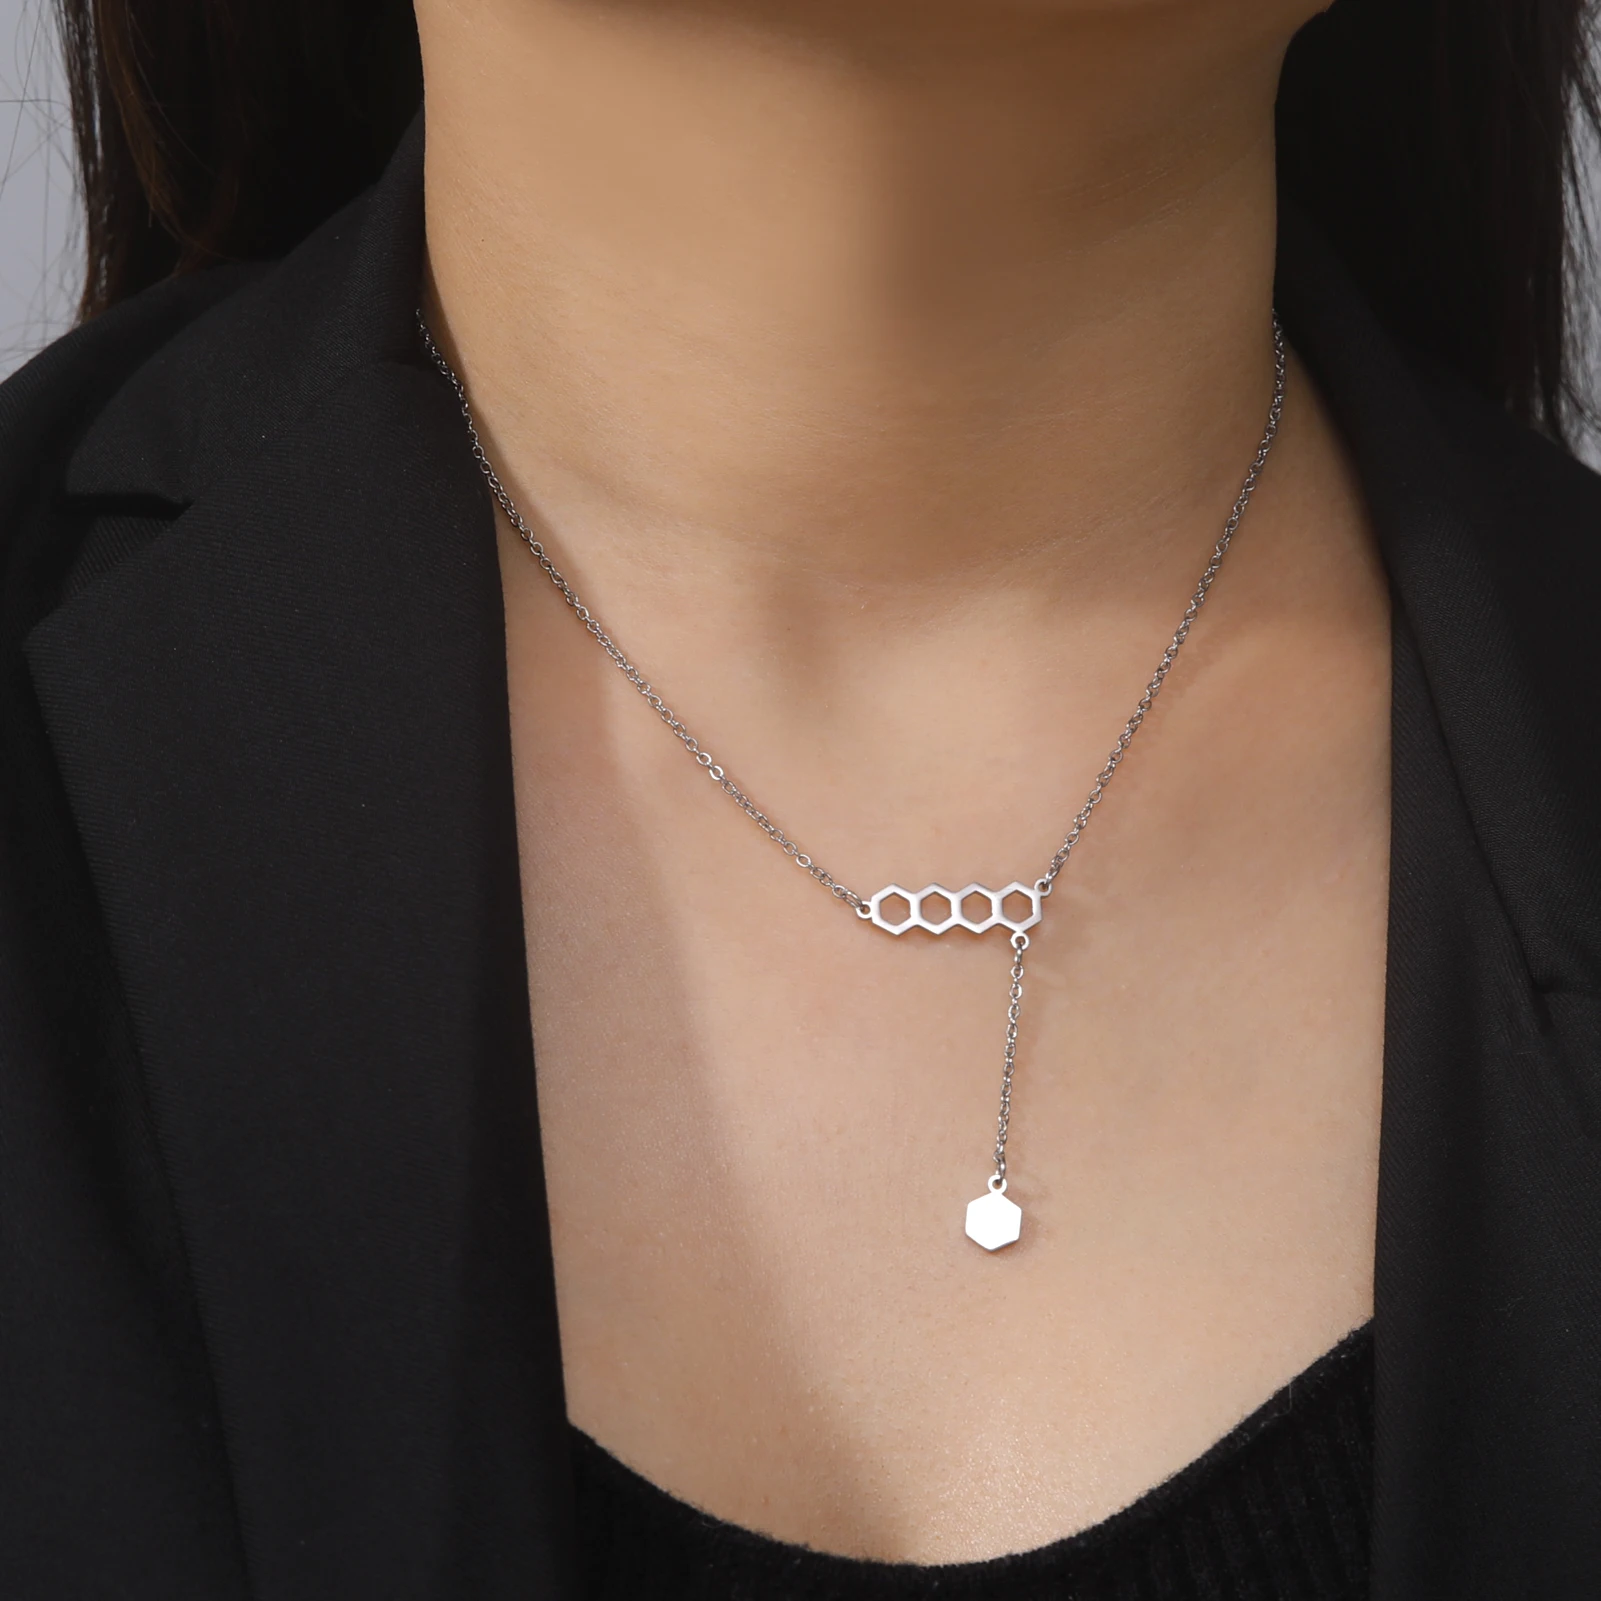 Dreamtimes Шестиугольные параллельные ожерелья с подвесками в виде сот для женщин, новое модное геометрическое ожерелье из нержавеющей стали, ювелирные изделия, подарки Изображение 2